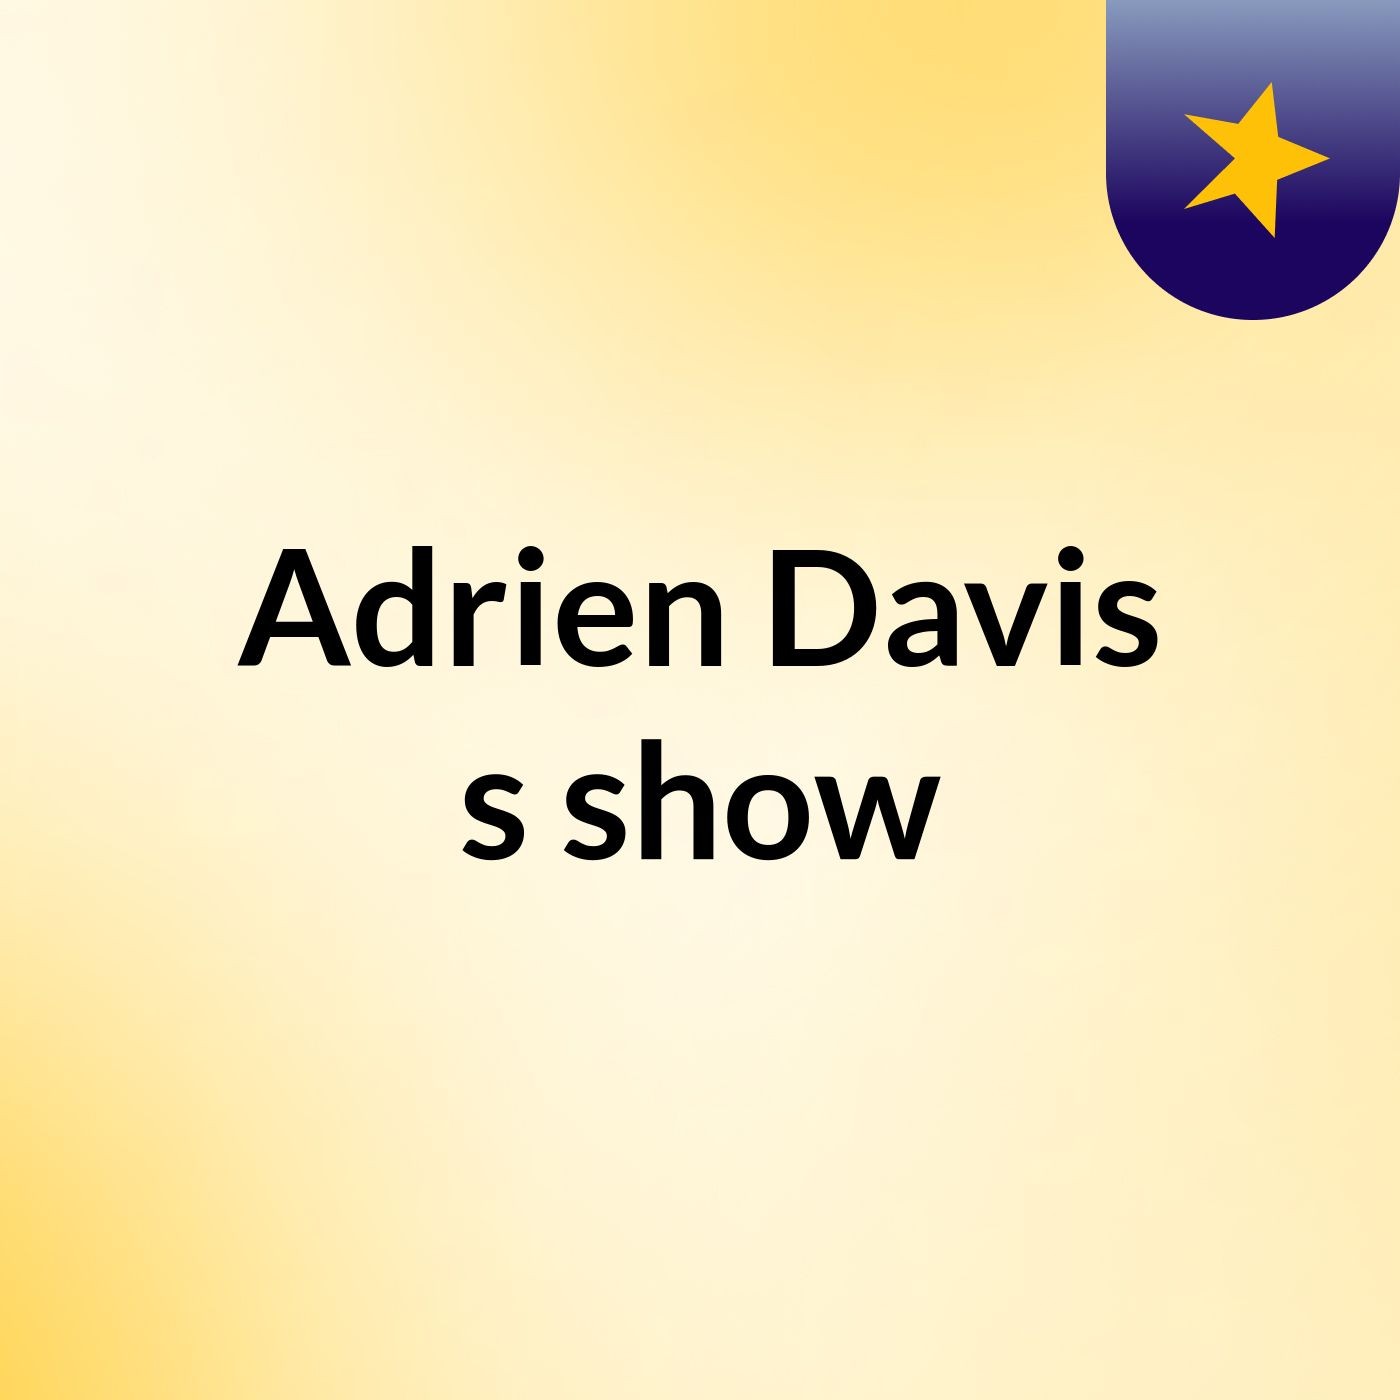 Adrien Davis's show